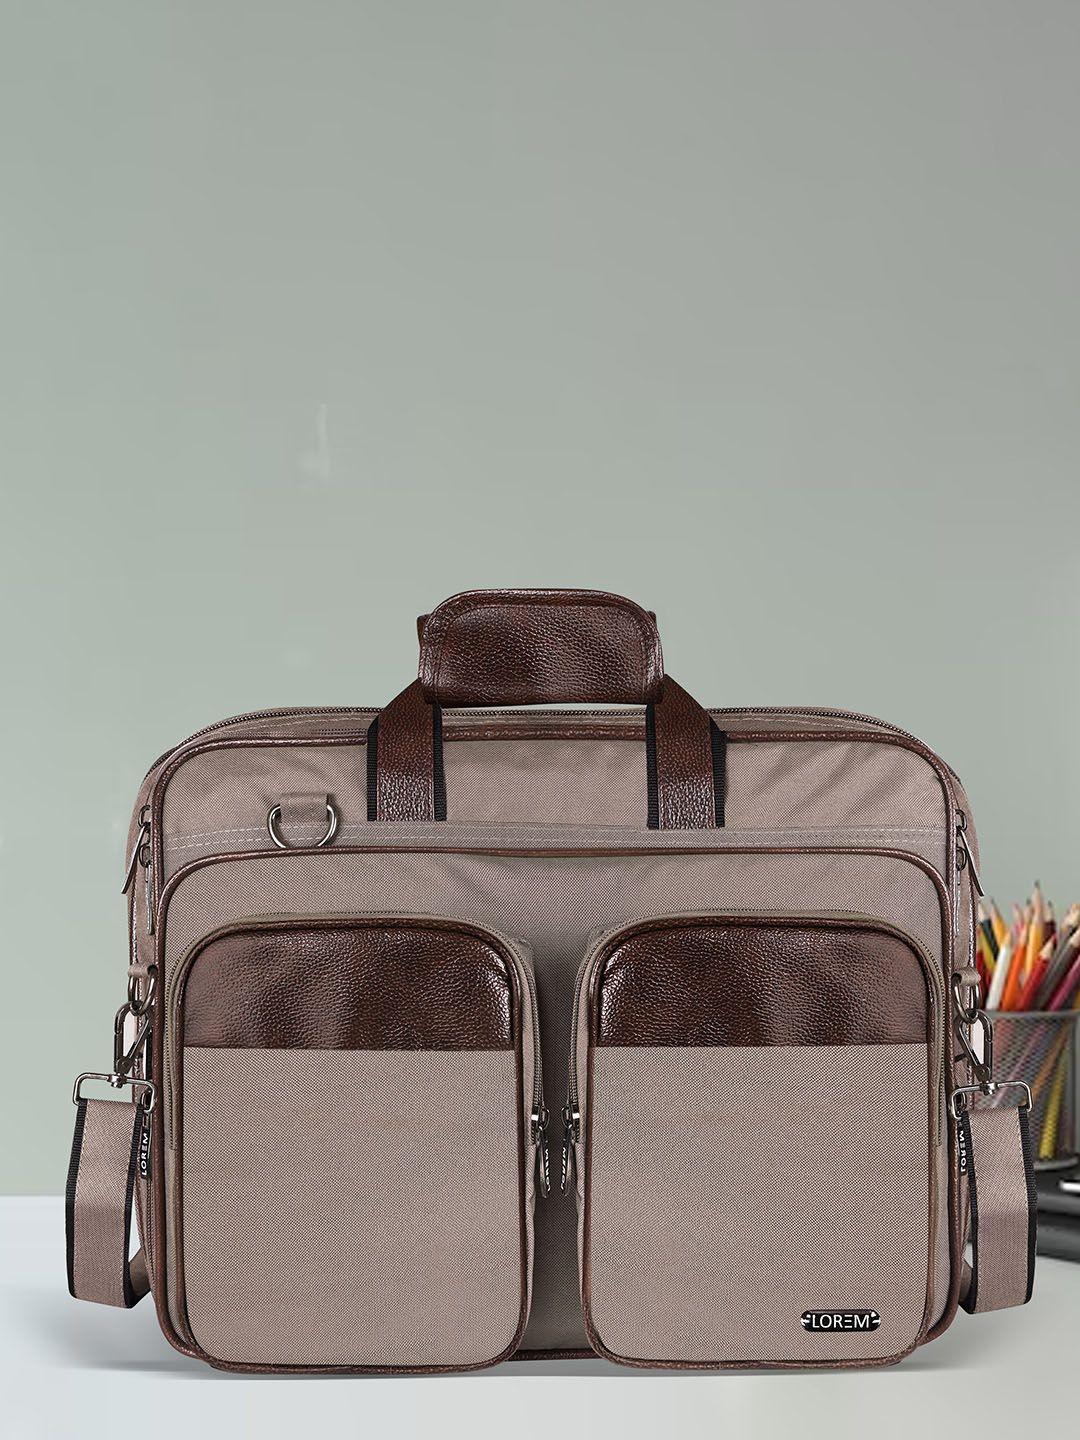 lorem unisex cream-coloured textured laptop bag